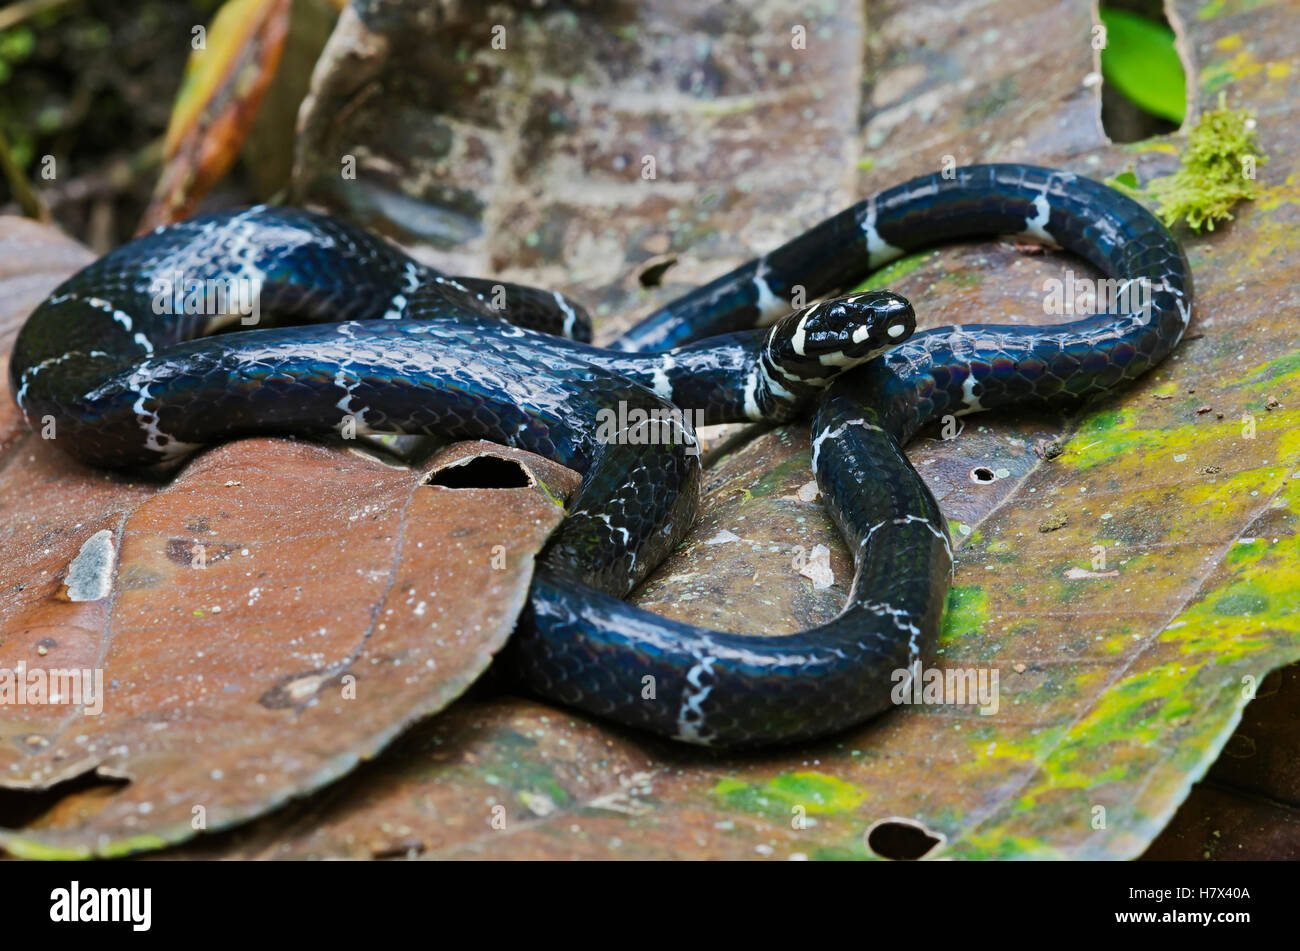 Halloween Snake (Pliocercus euryzonus) a non-venomous coral snake mimic, Mindo, Ecuador Stock Photo